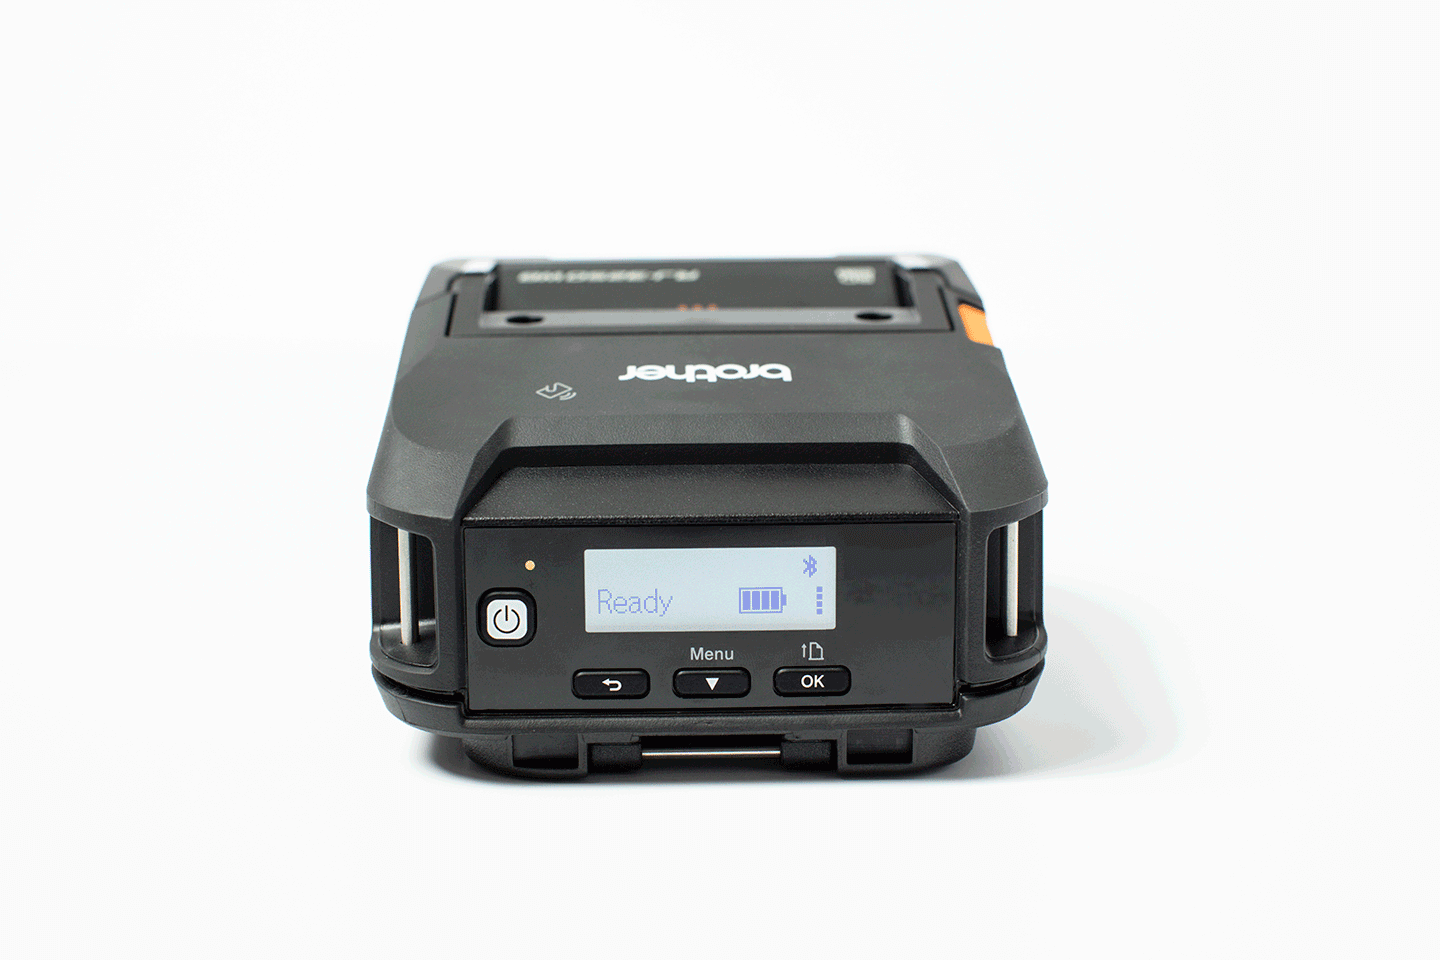 Brother RJ-3230BL izdržljiv mobilni štampač nalepnica 4